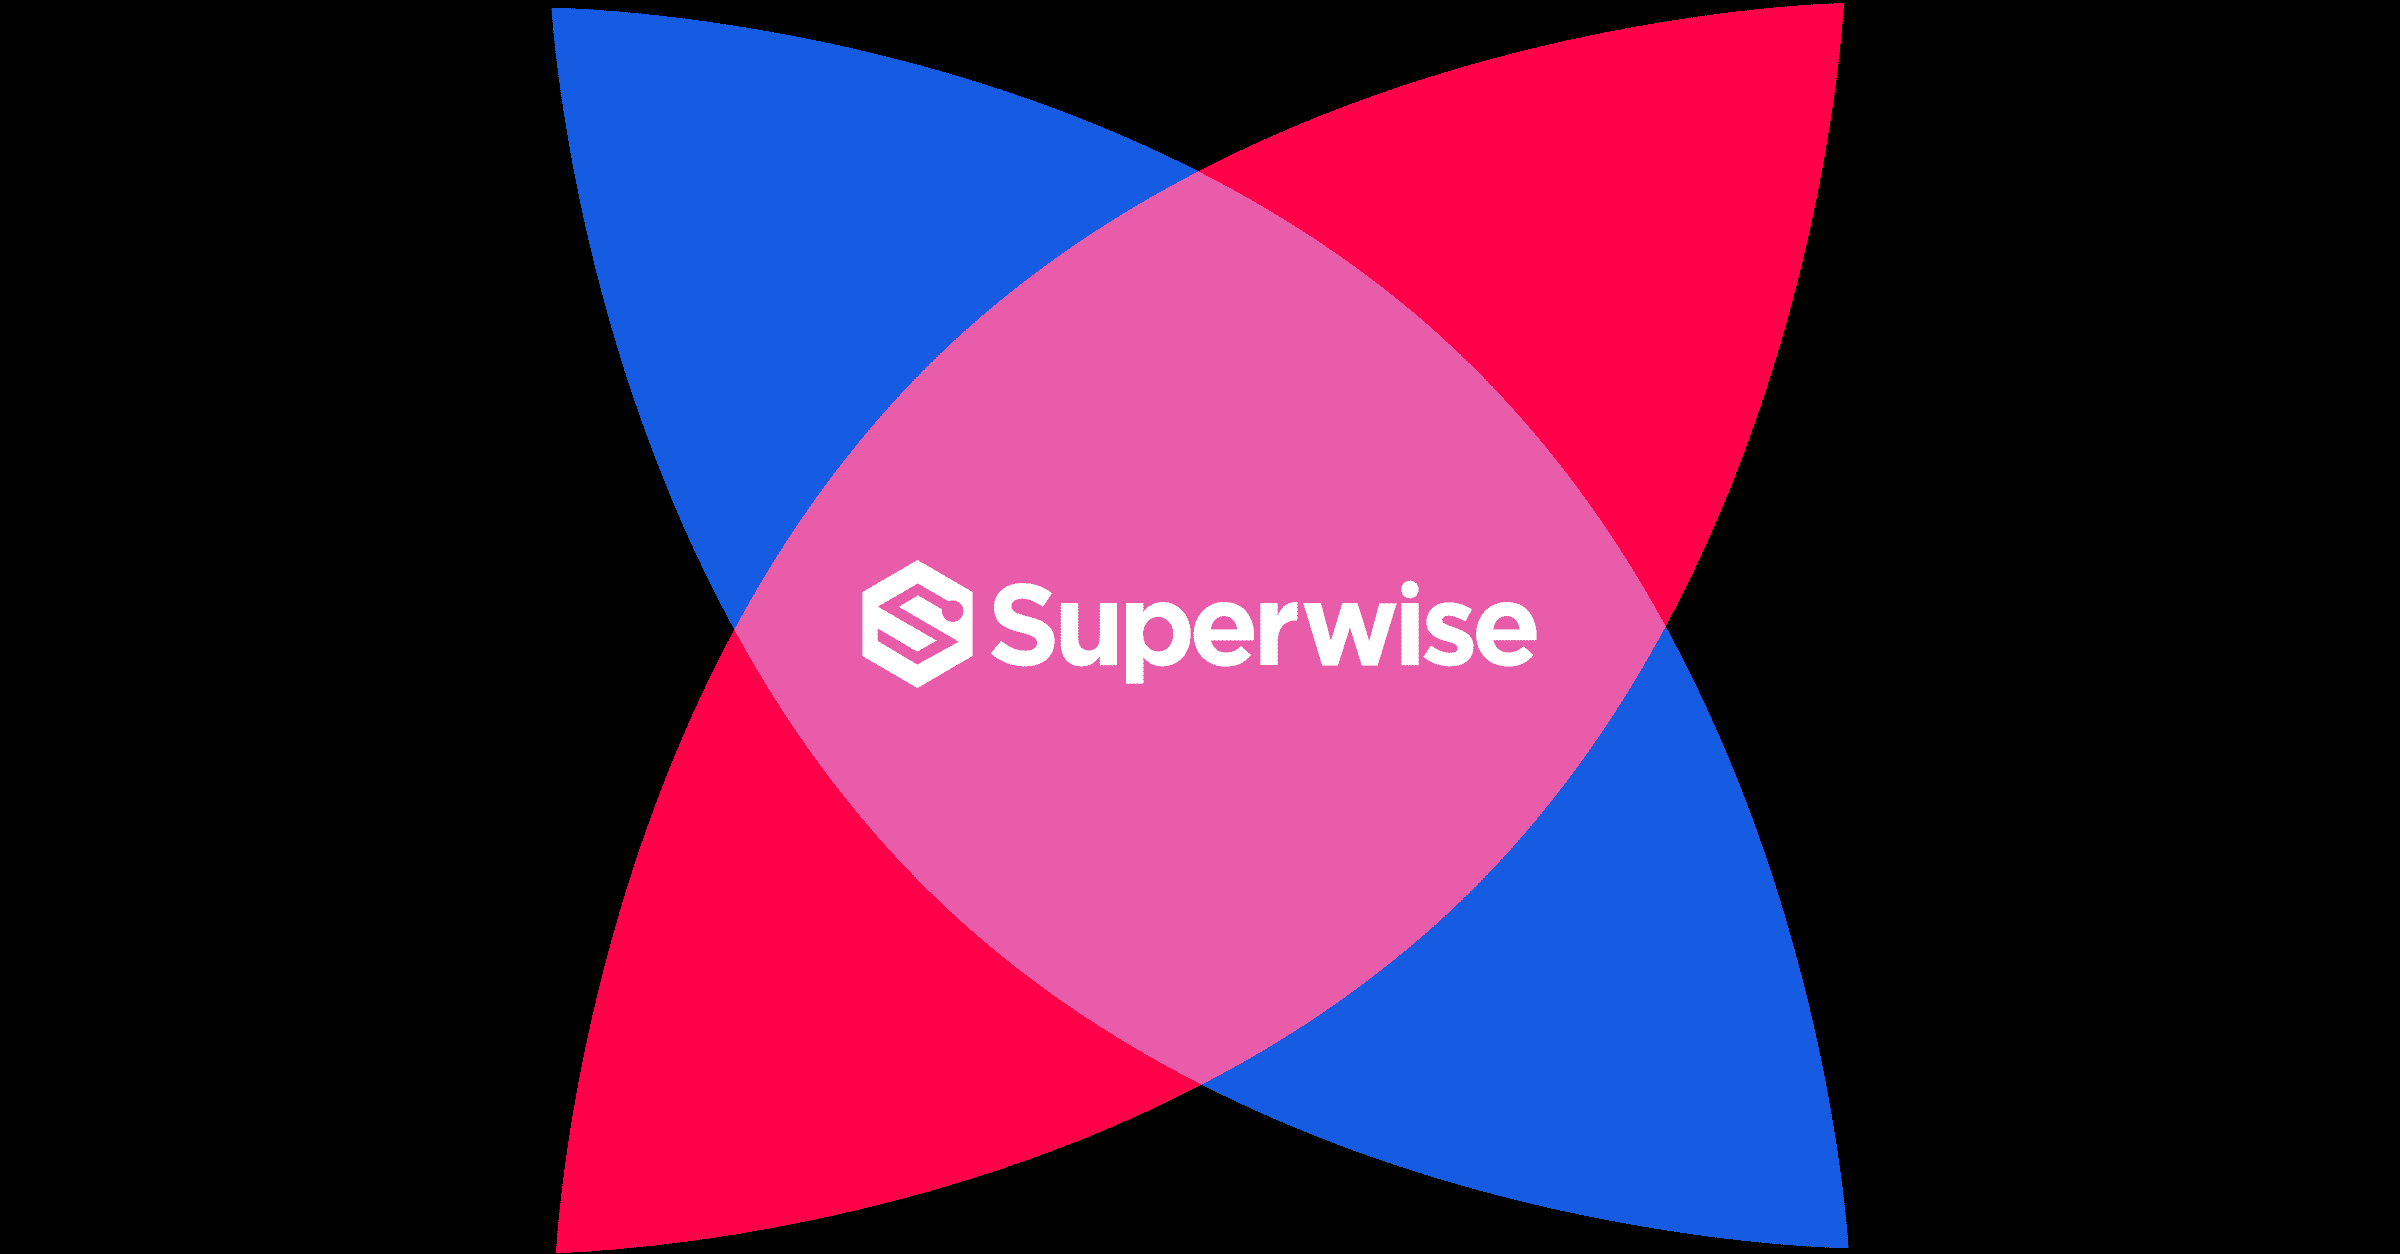 Superwise logo seed image